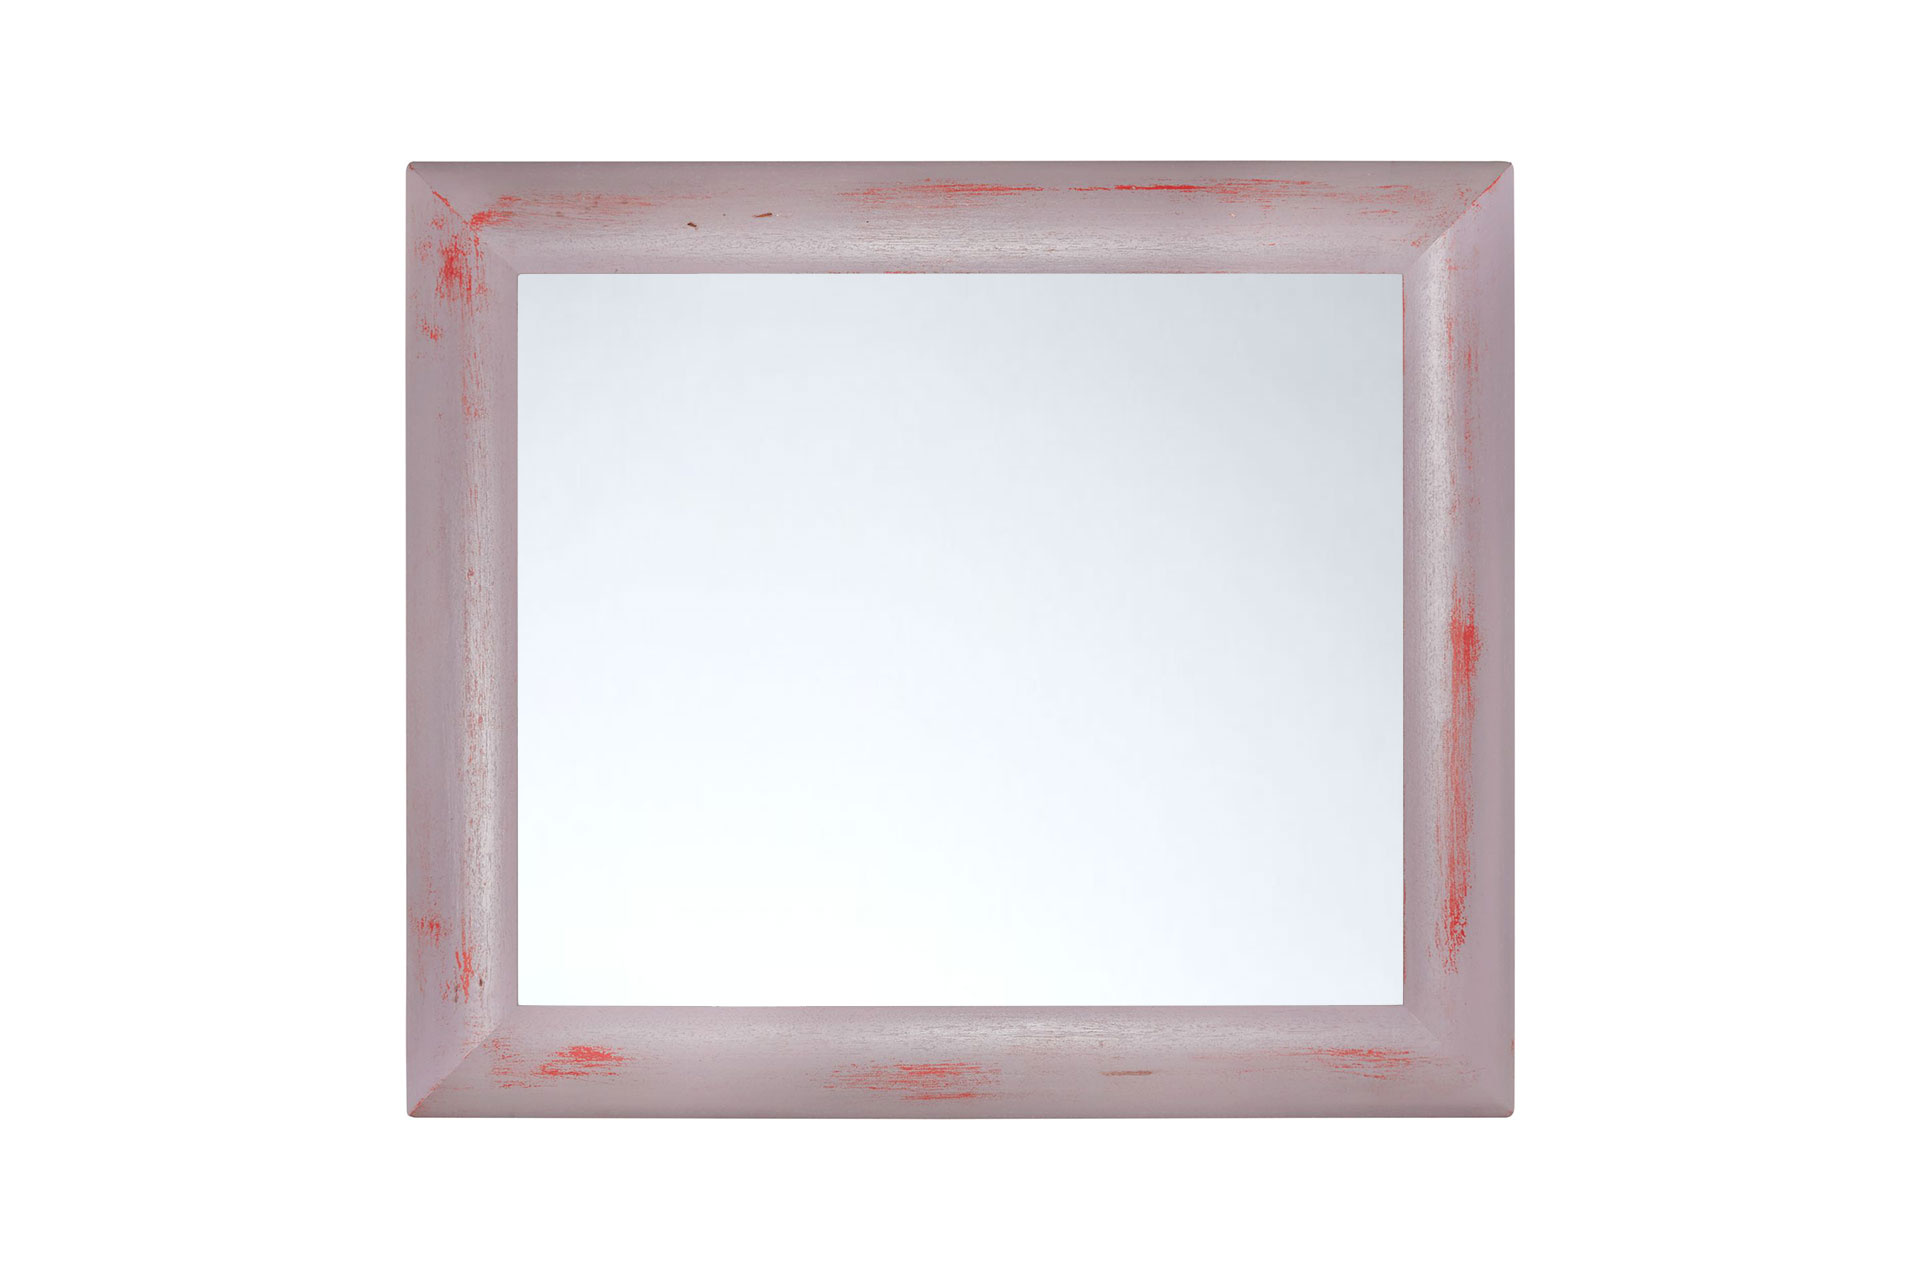 ASR-Rahmendesign Wandspiegel Modell Konstanz, Farbe: feuerrot, pastellviolett, Größe außen: 54cm x 74cm, Spiegelgröße: 40cm x 60cm, Facettenspiegel, rechteckig, Holz, Innenbereich, Shabby-Chic